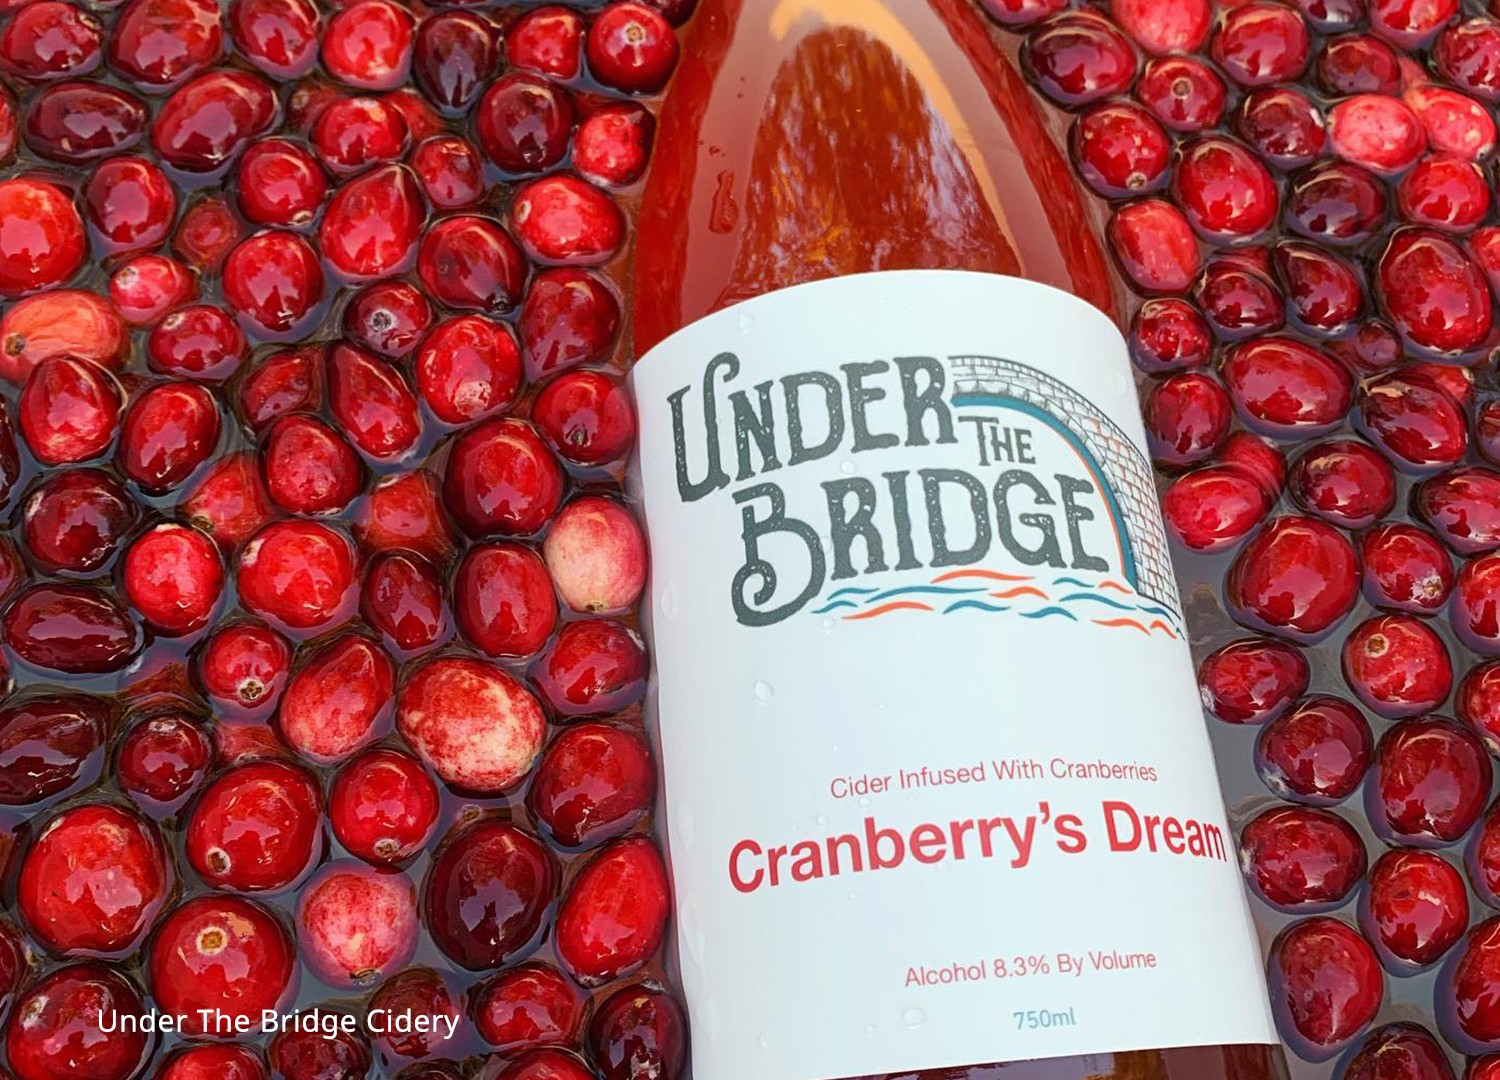 Cranberry hard cider